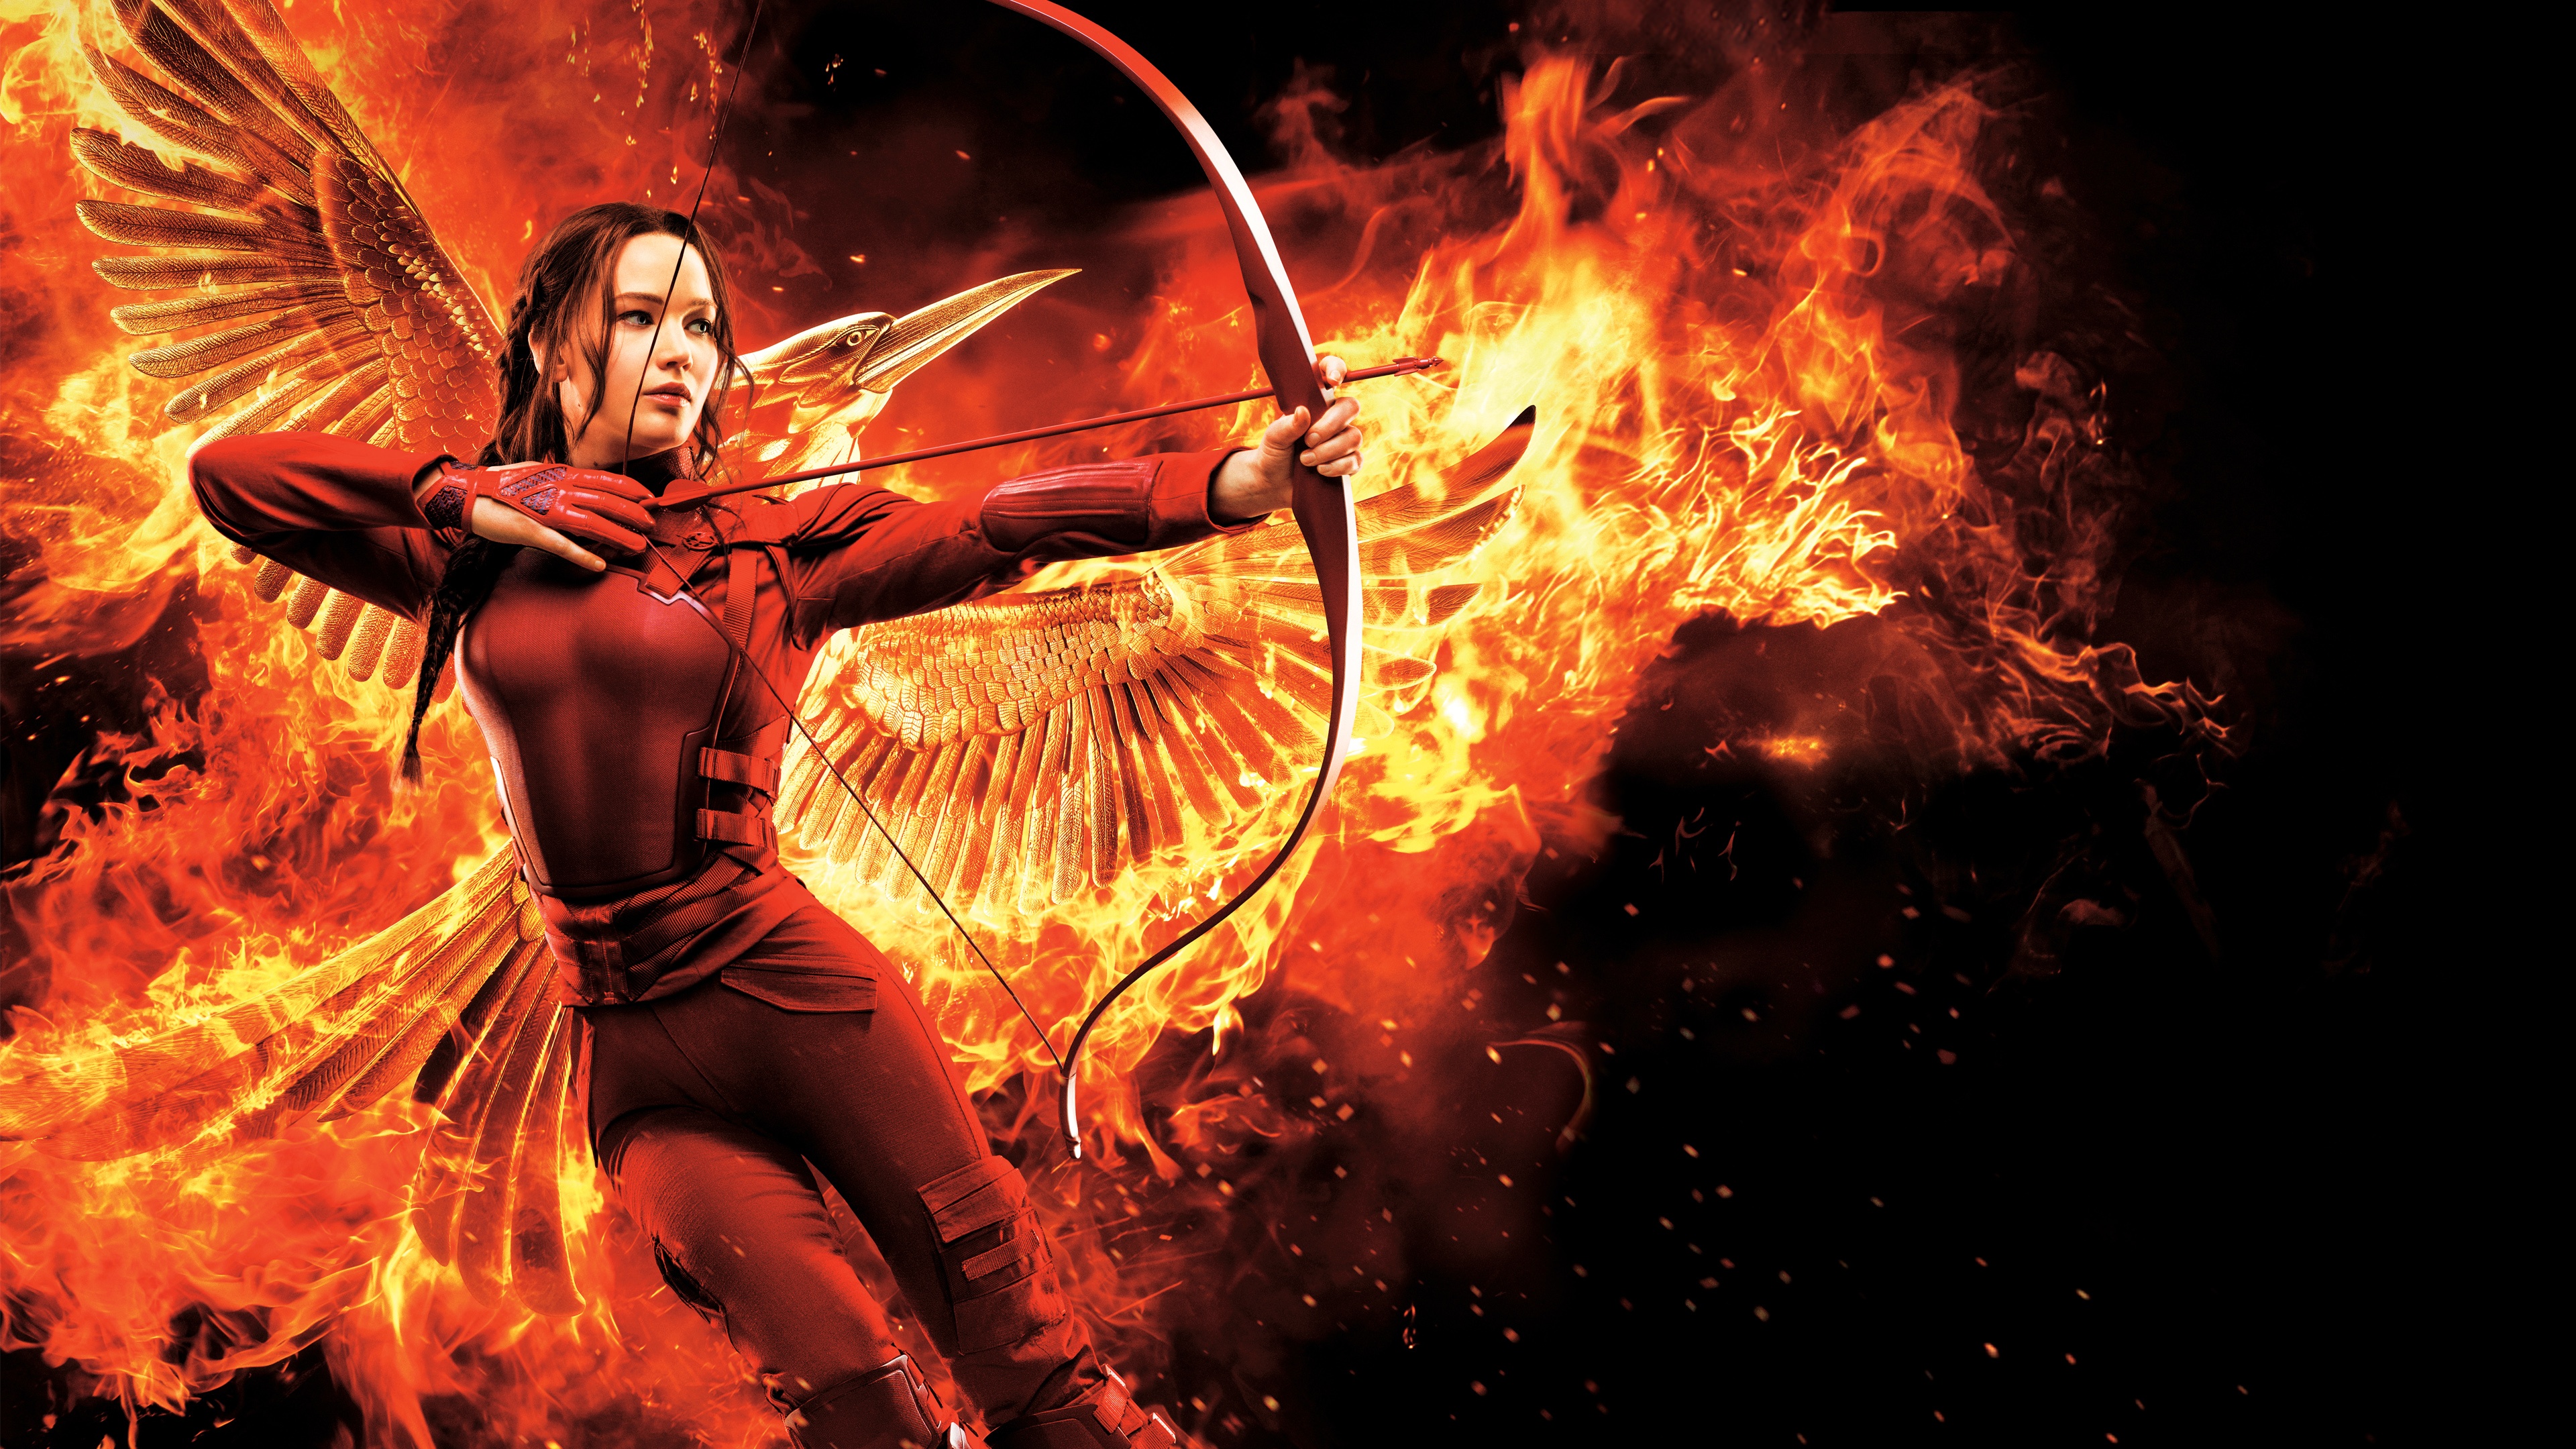 The Hunger Games Mockingjay Part 2 Bow Arrows Fire Birds Jennifer Lawrence Katniss Everdeen Shooter 3840x2160